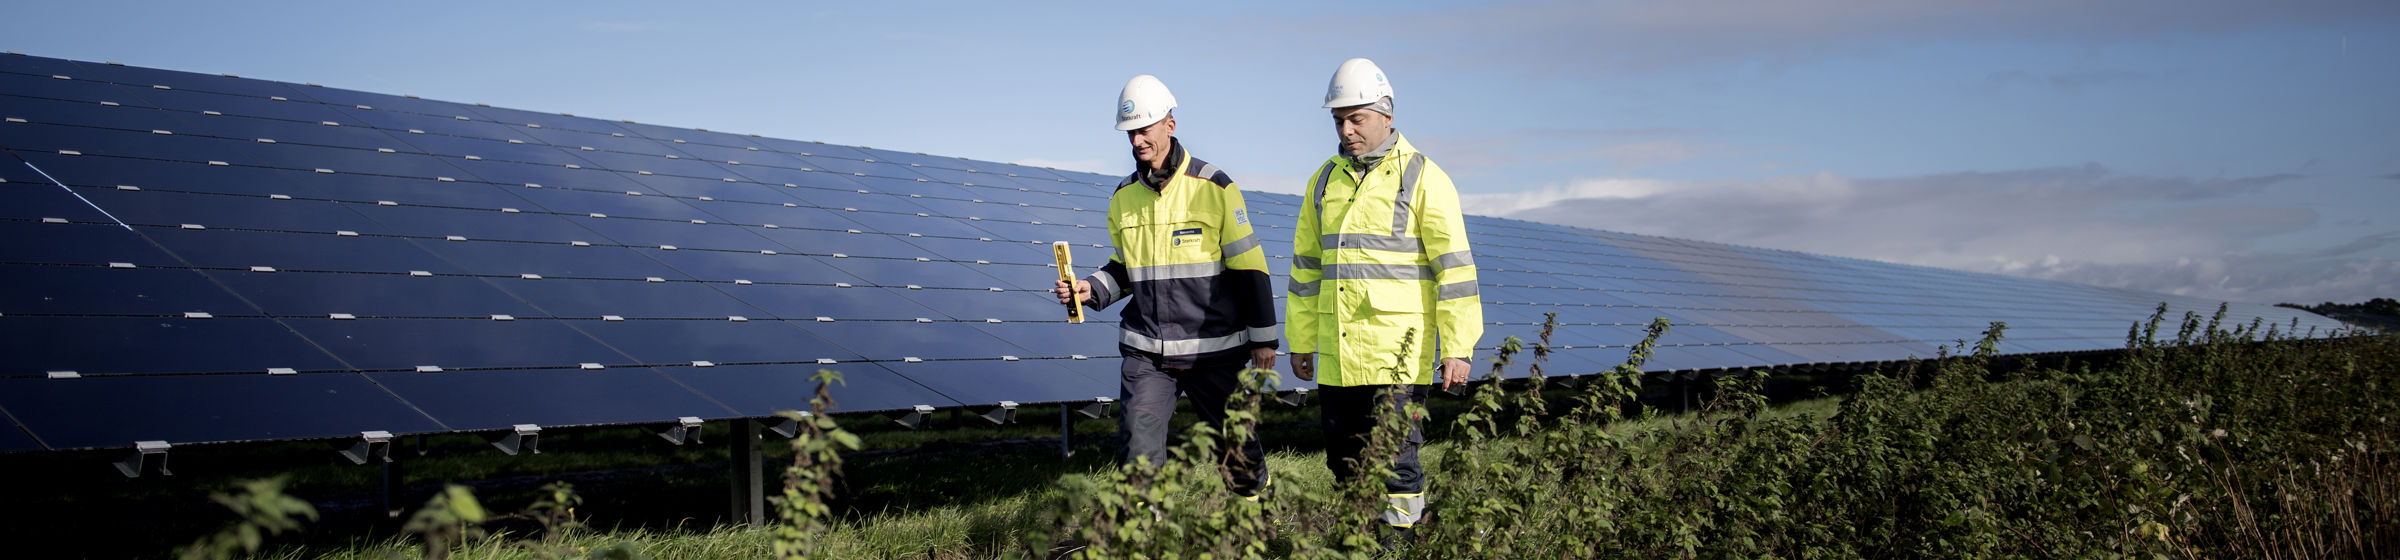 Zwei Mitarbeiter vor Solarpark